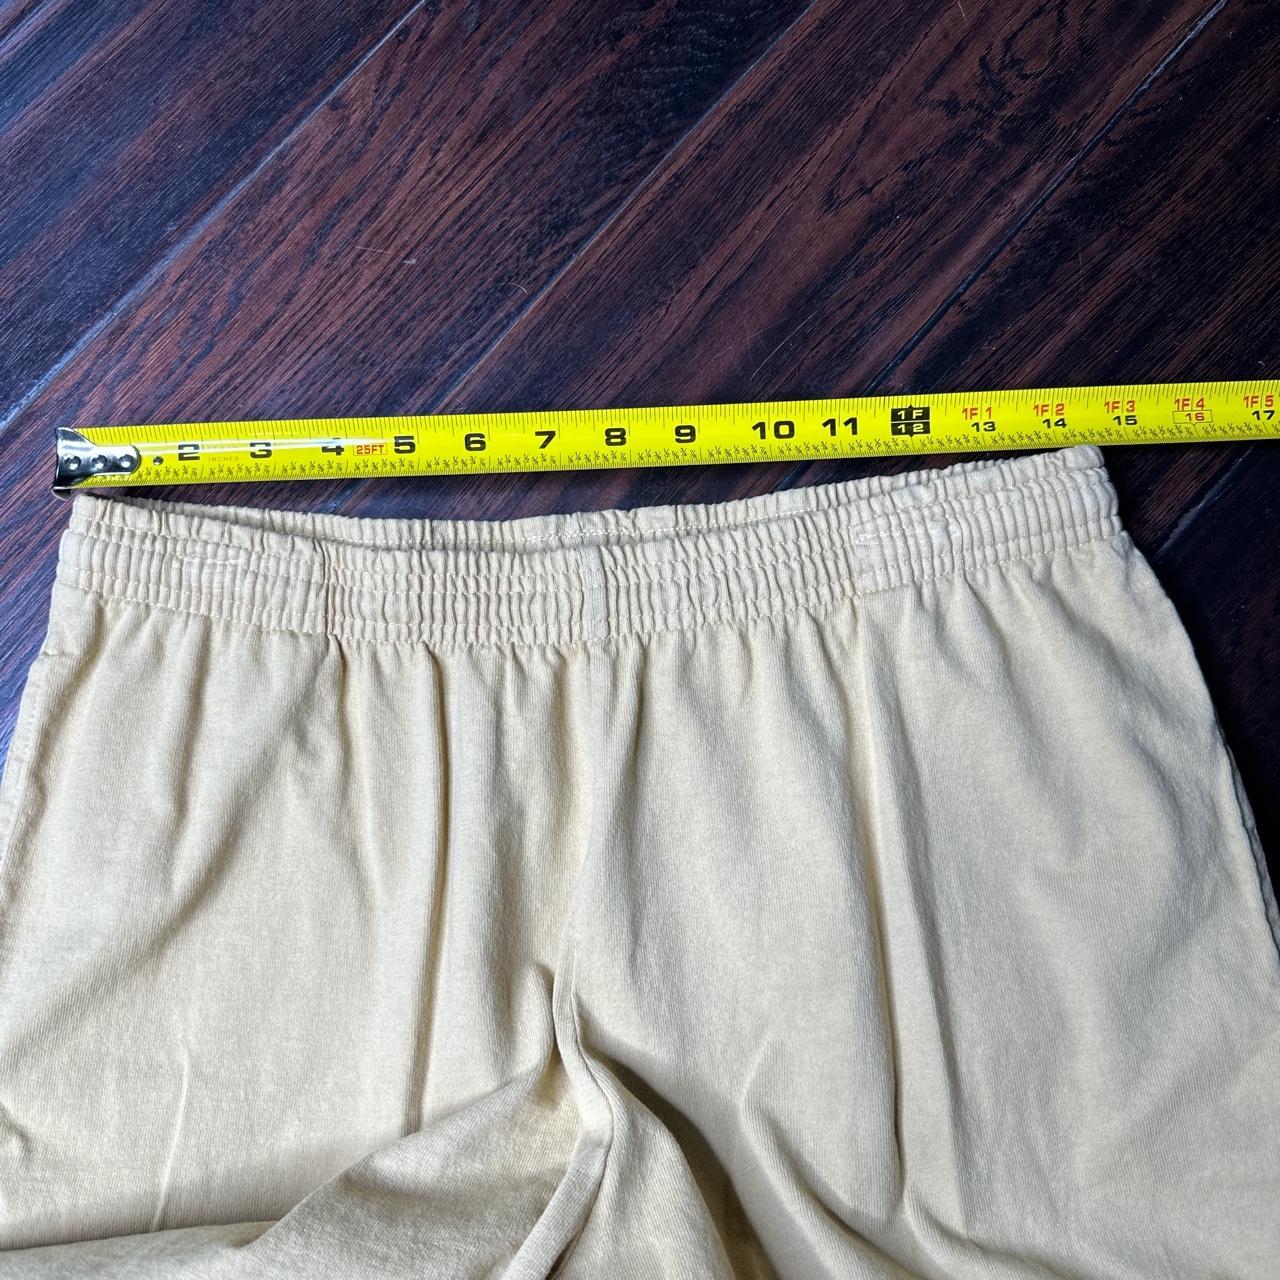 Drawstring waist, lightweight cotton pants. These - Depop